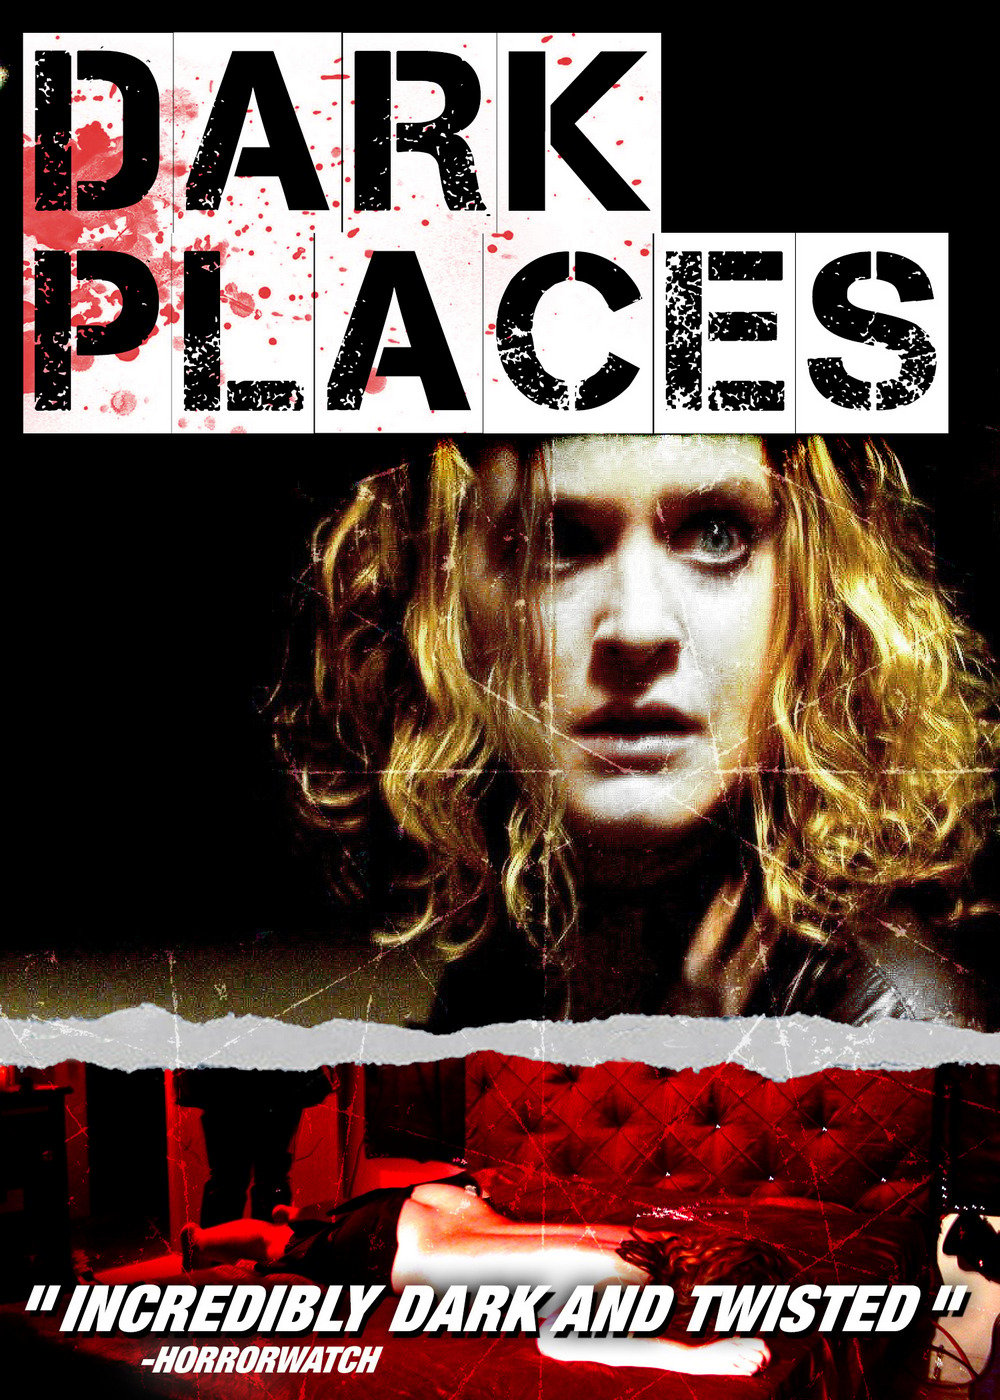 Dark Places (2006) เงามืด สัญญาณมรณะ ดูหนังออนไลน์ HD